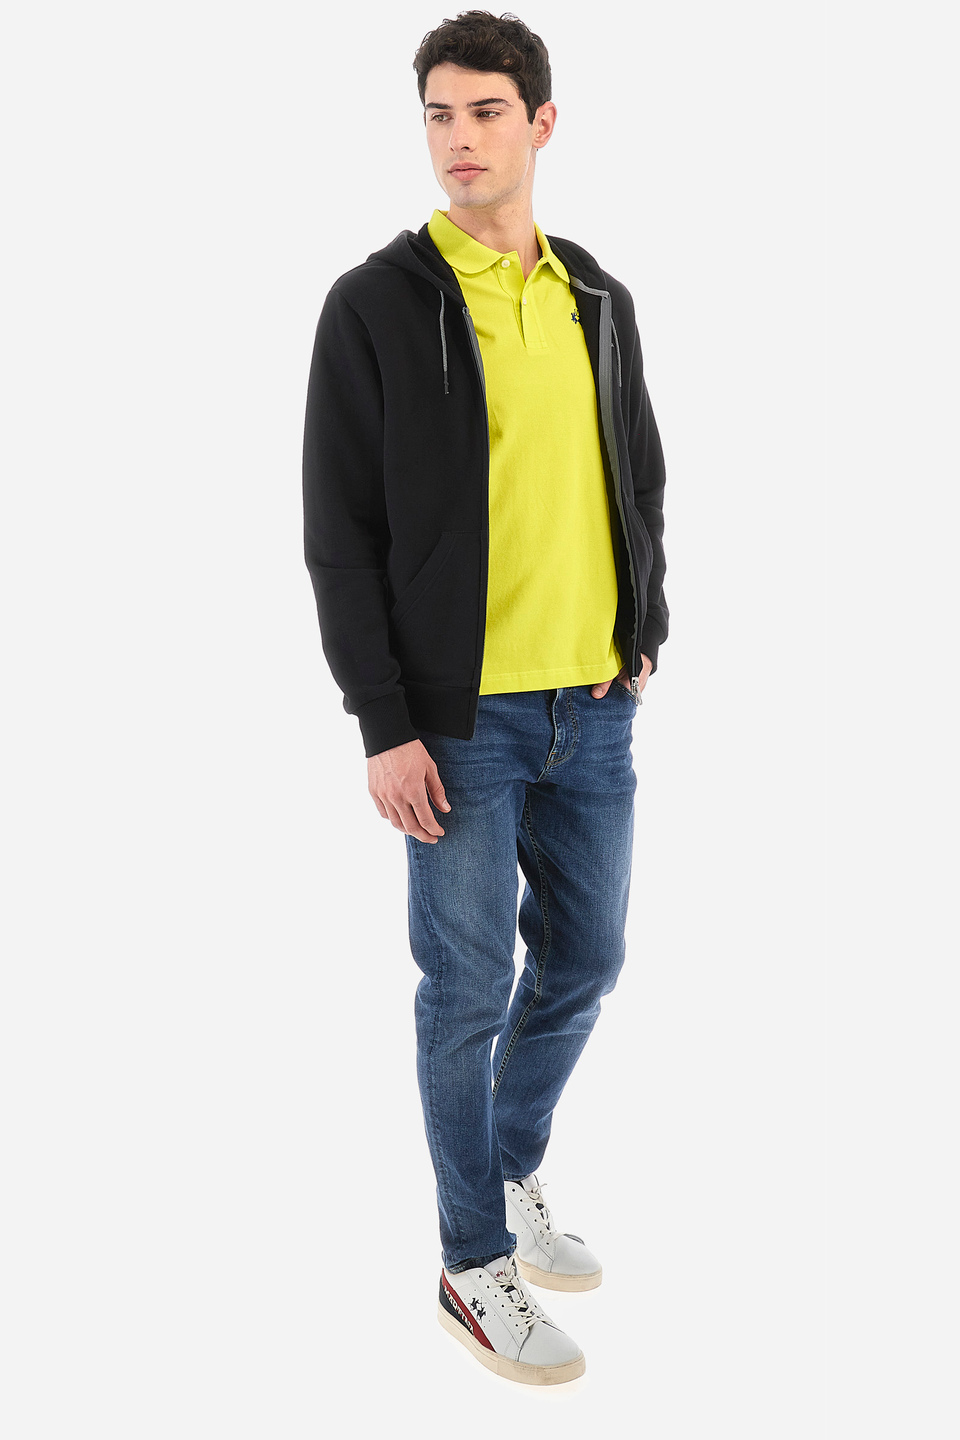 Men's full-zip sweatshirt in a regular fit - Thiago | La Martina - Official Online Shop